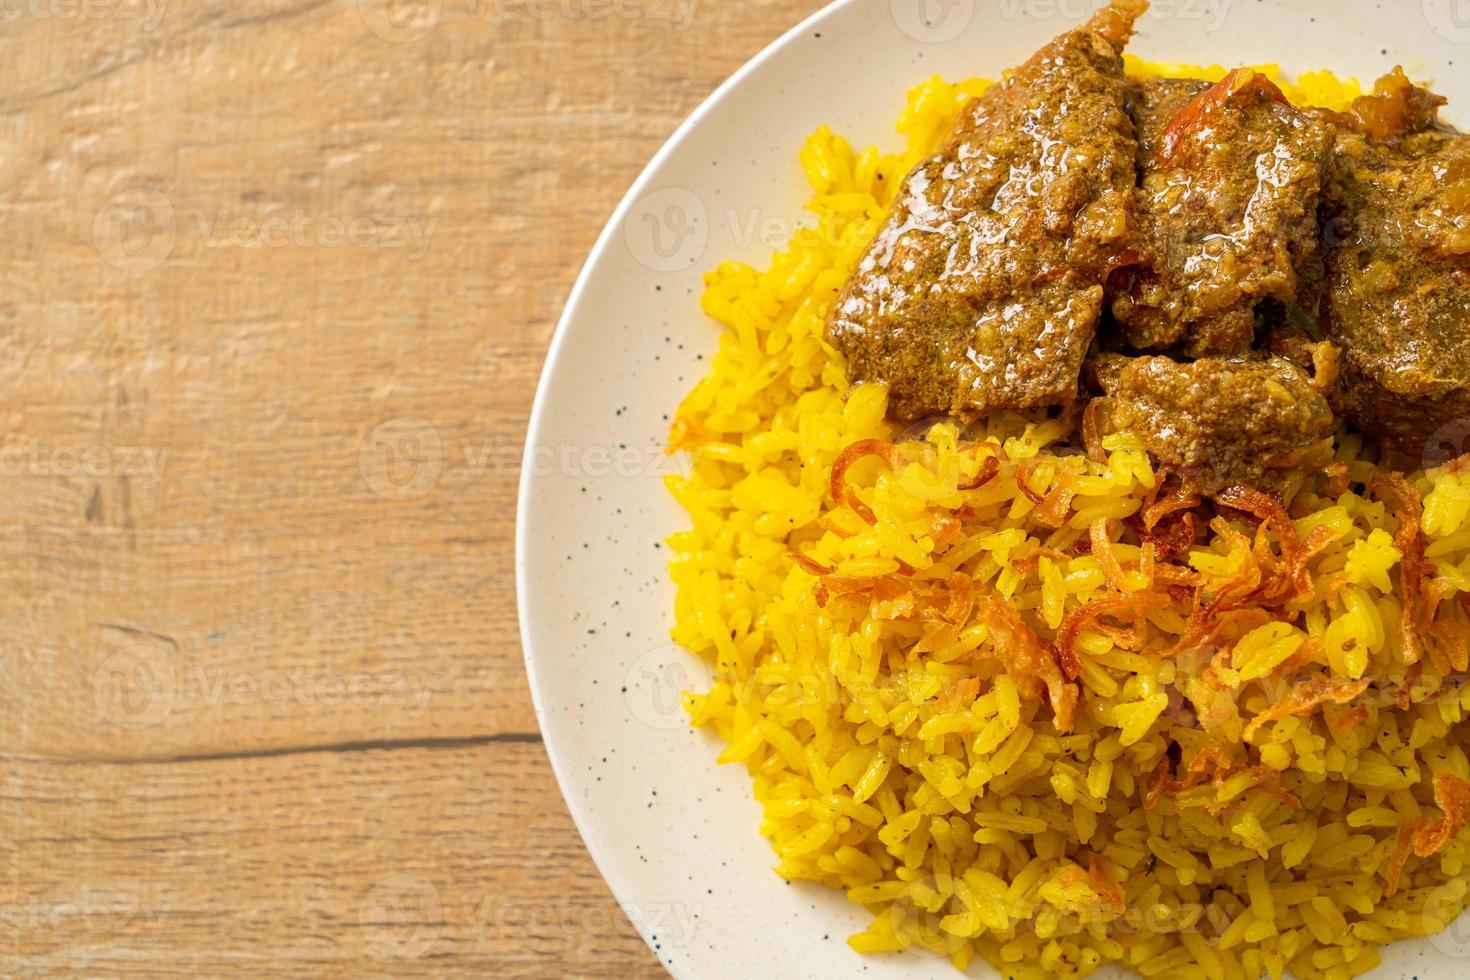 biryani de ternera o arroz al curry y ternera - versión tailandesa-musulmana del biryani indio, con arroz amarillo fragante y ternera foto